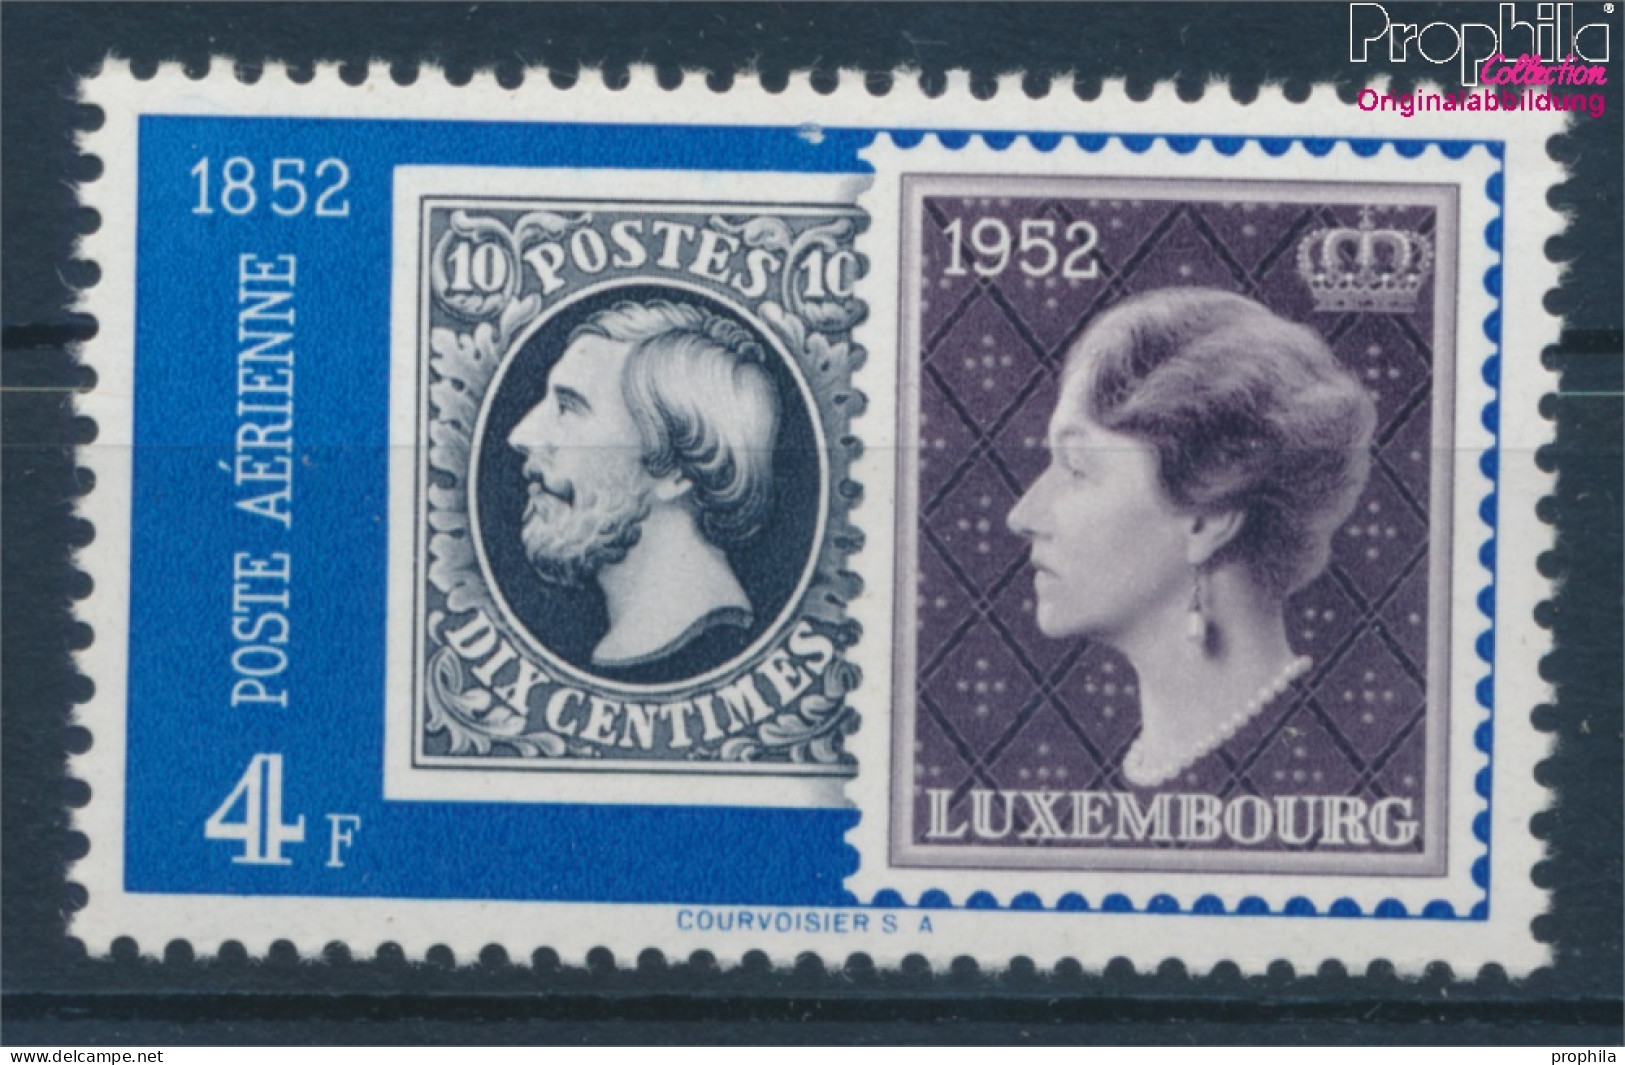 Luxemburg 492 Postfrisch 1952 Philatelie (10363181 - Nuovi